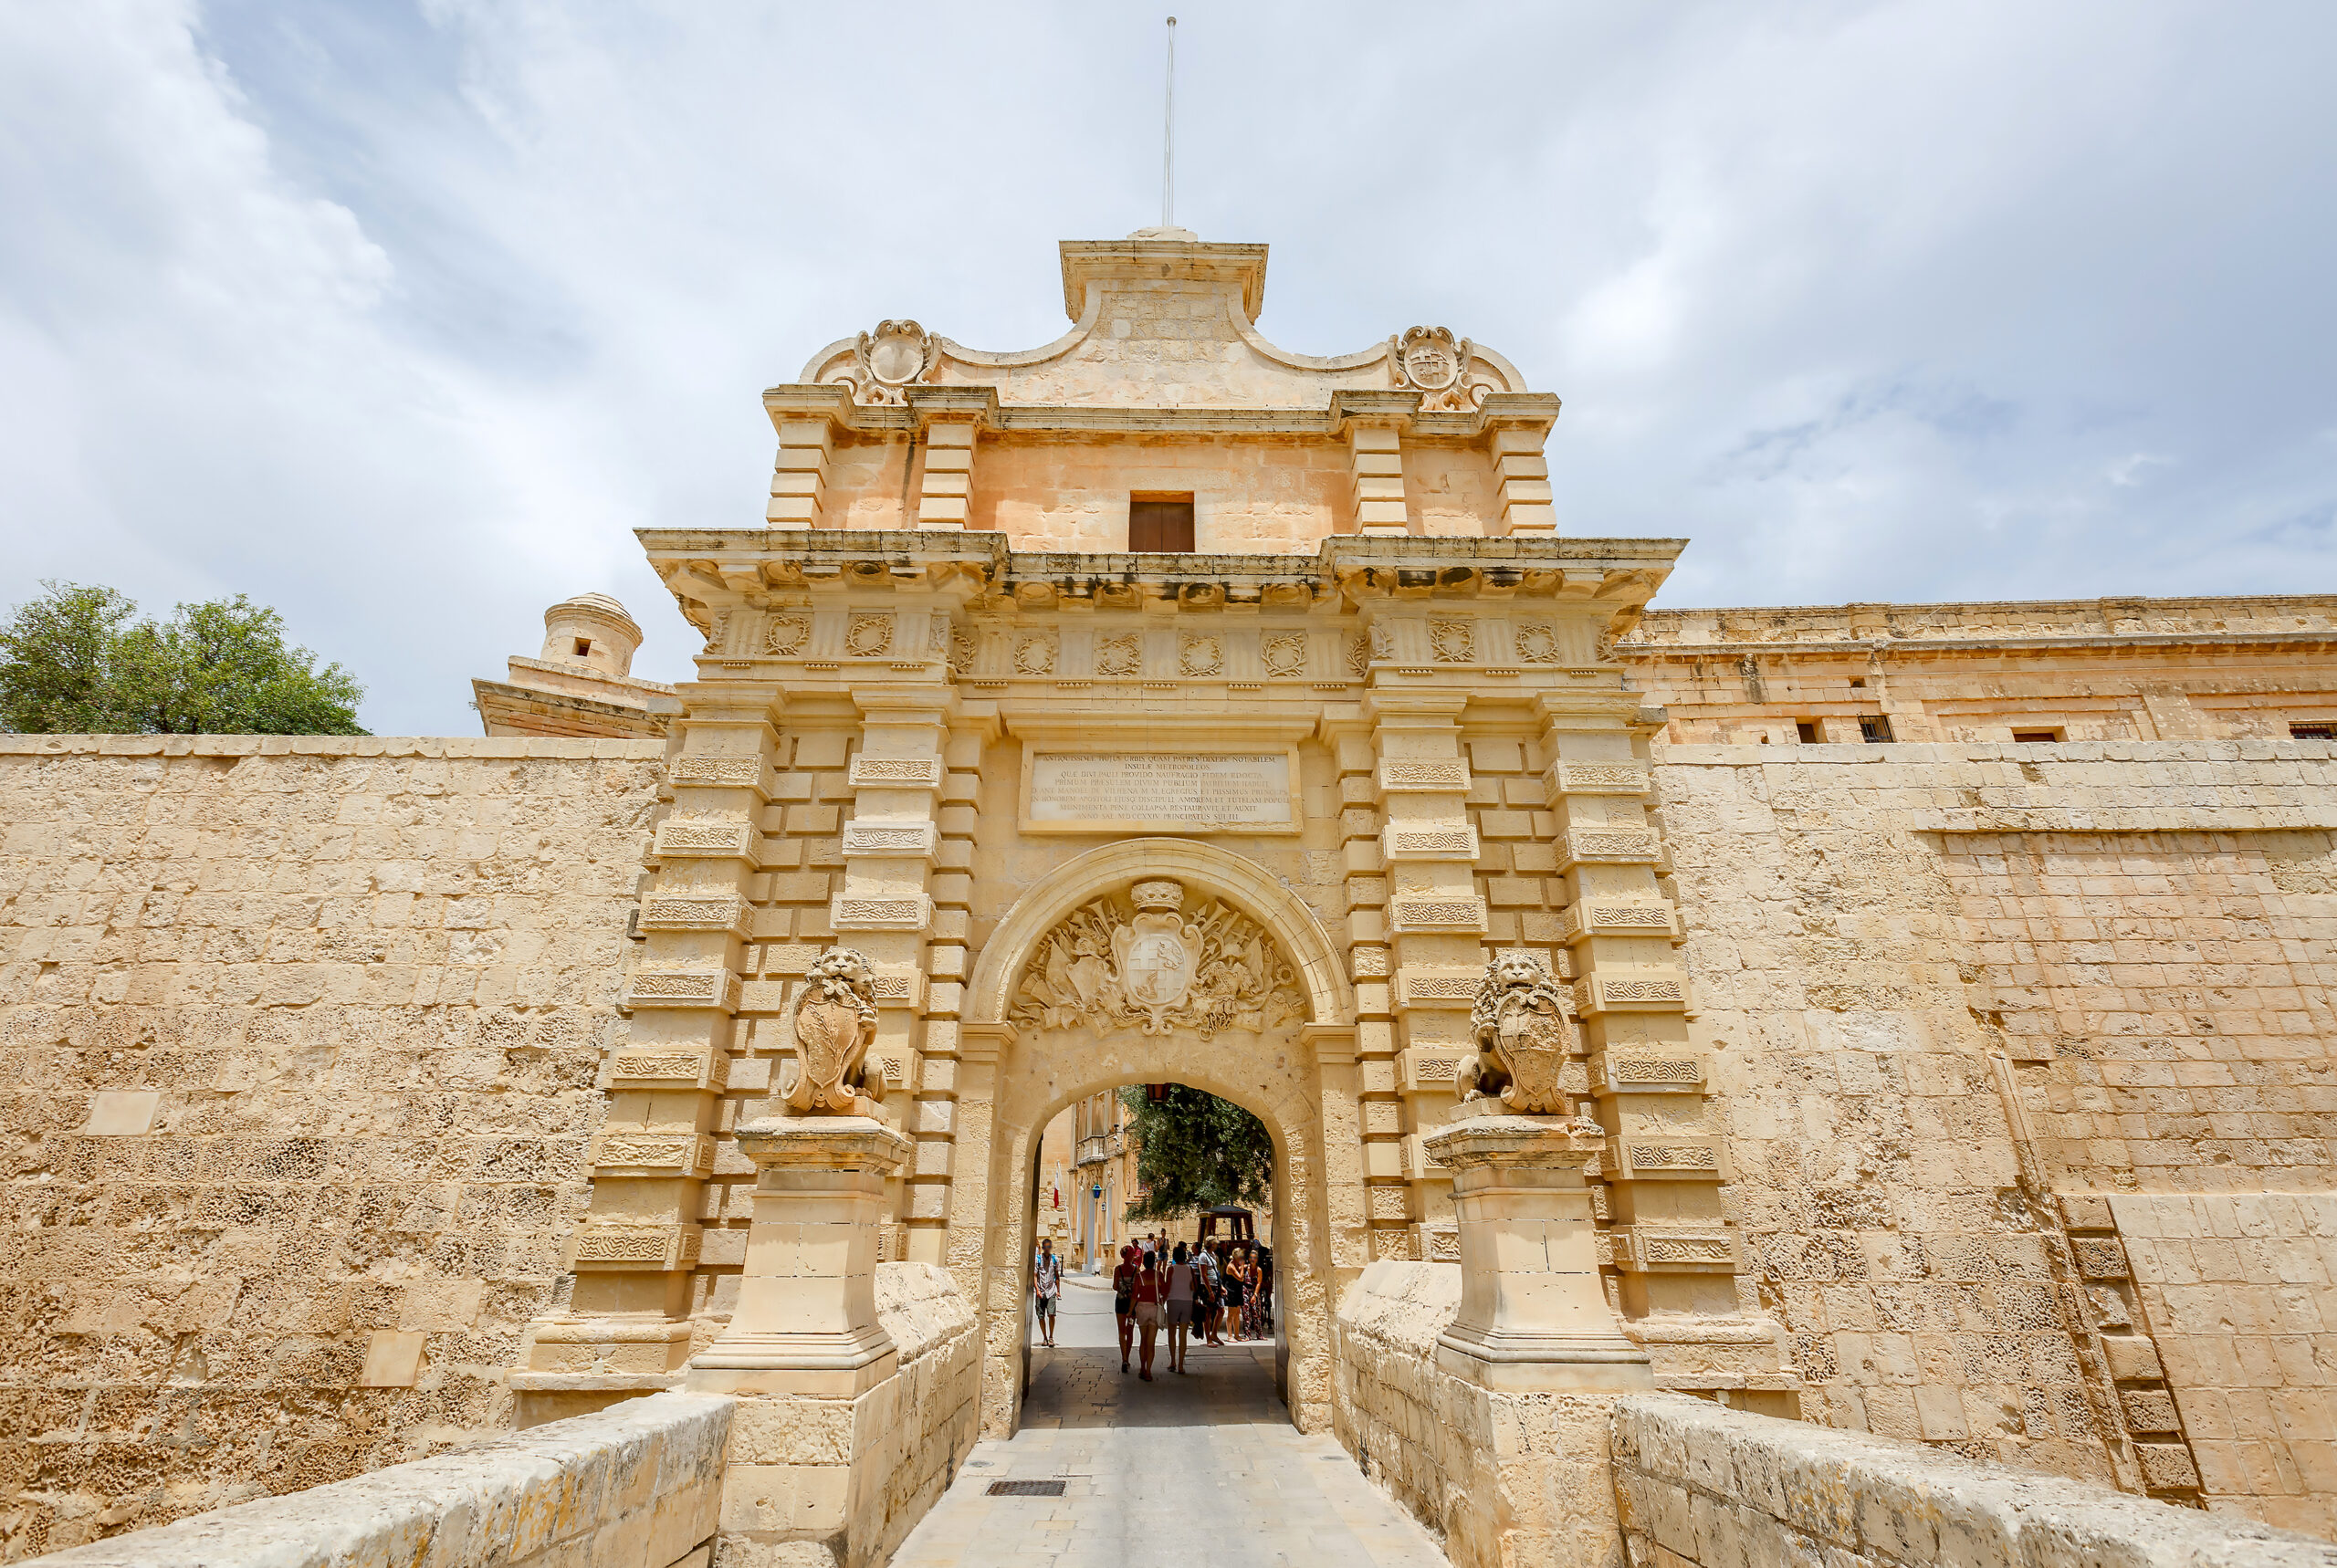 Mdina Old City in Malta